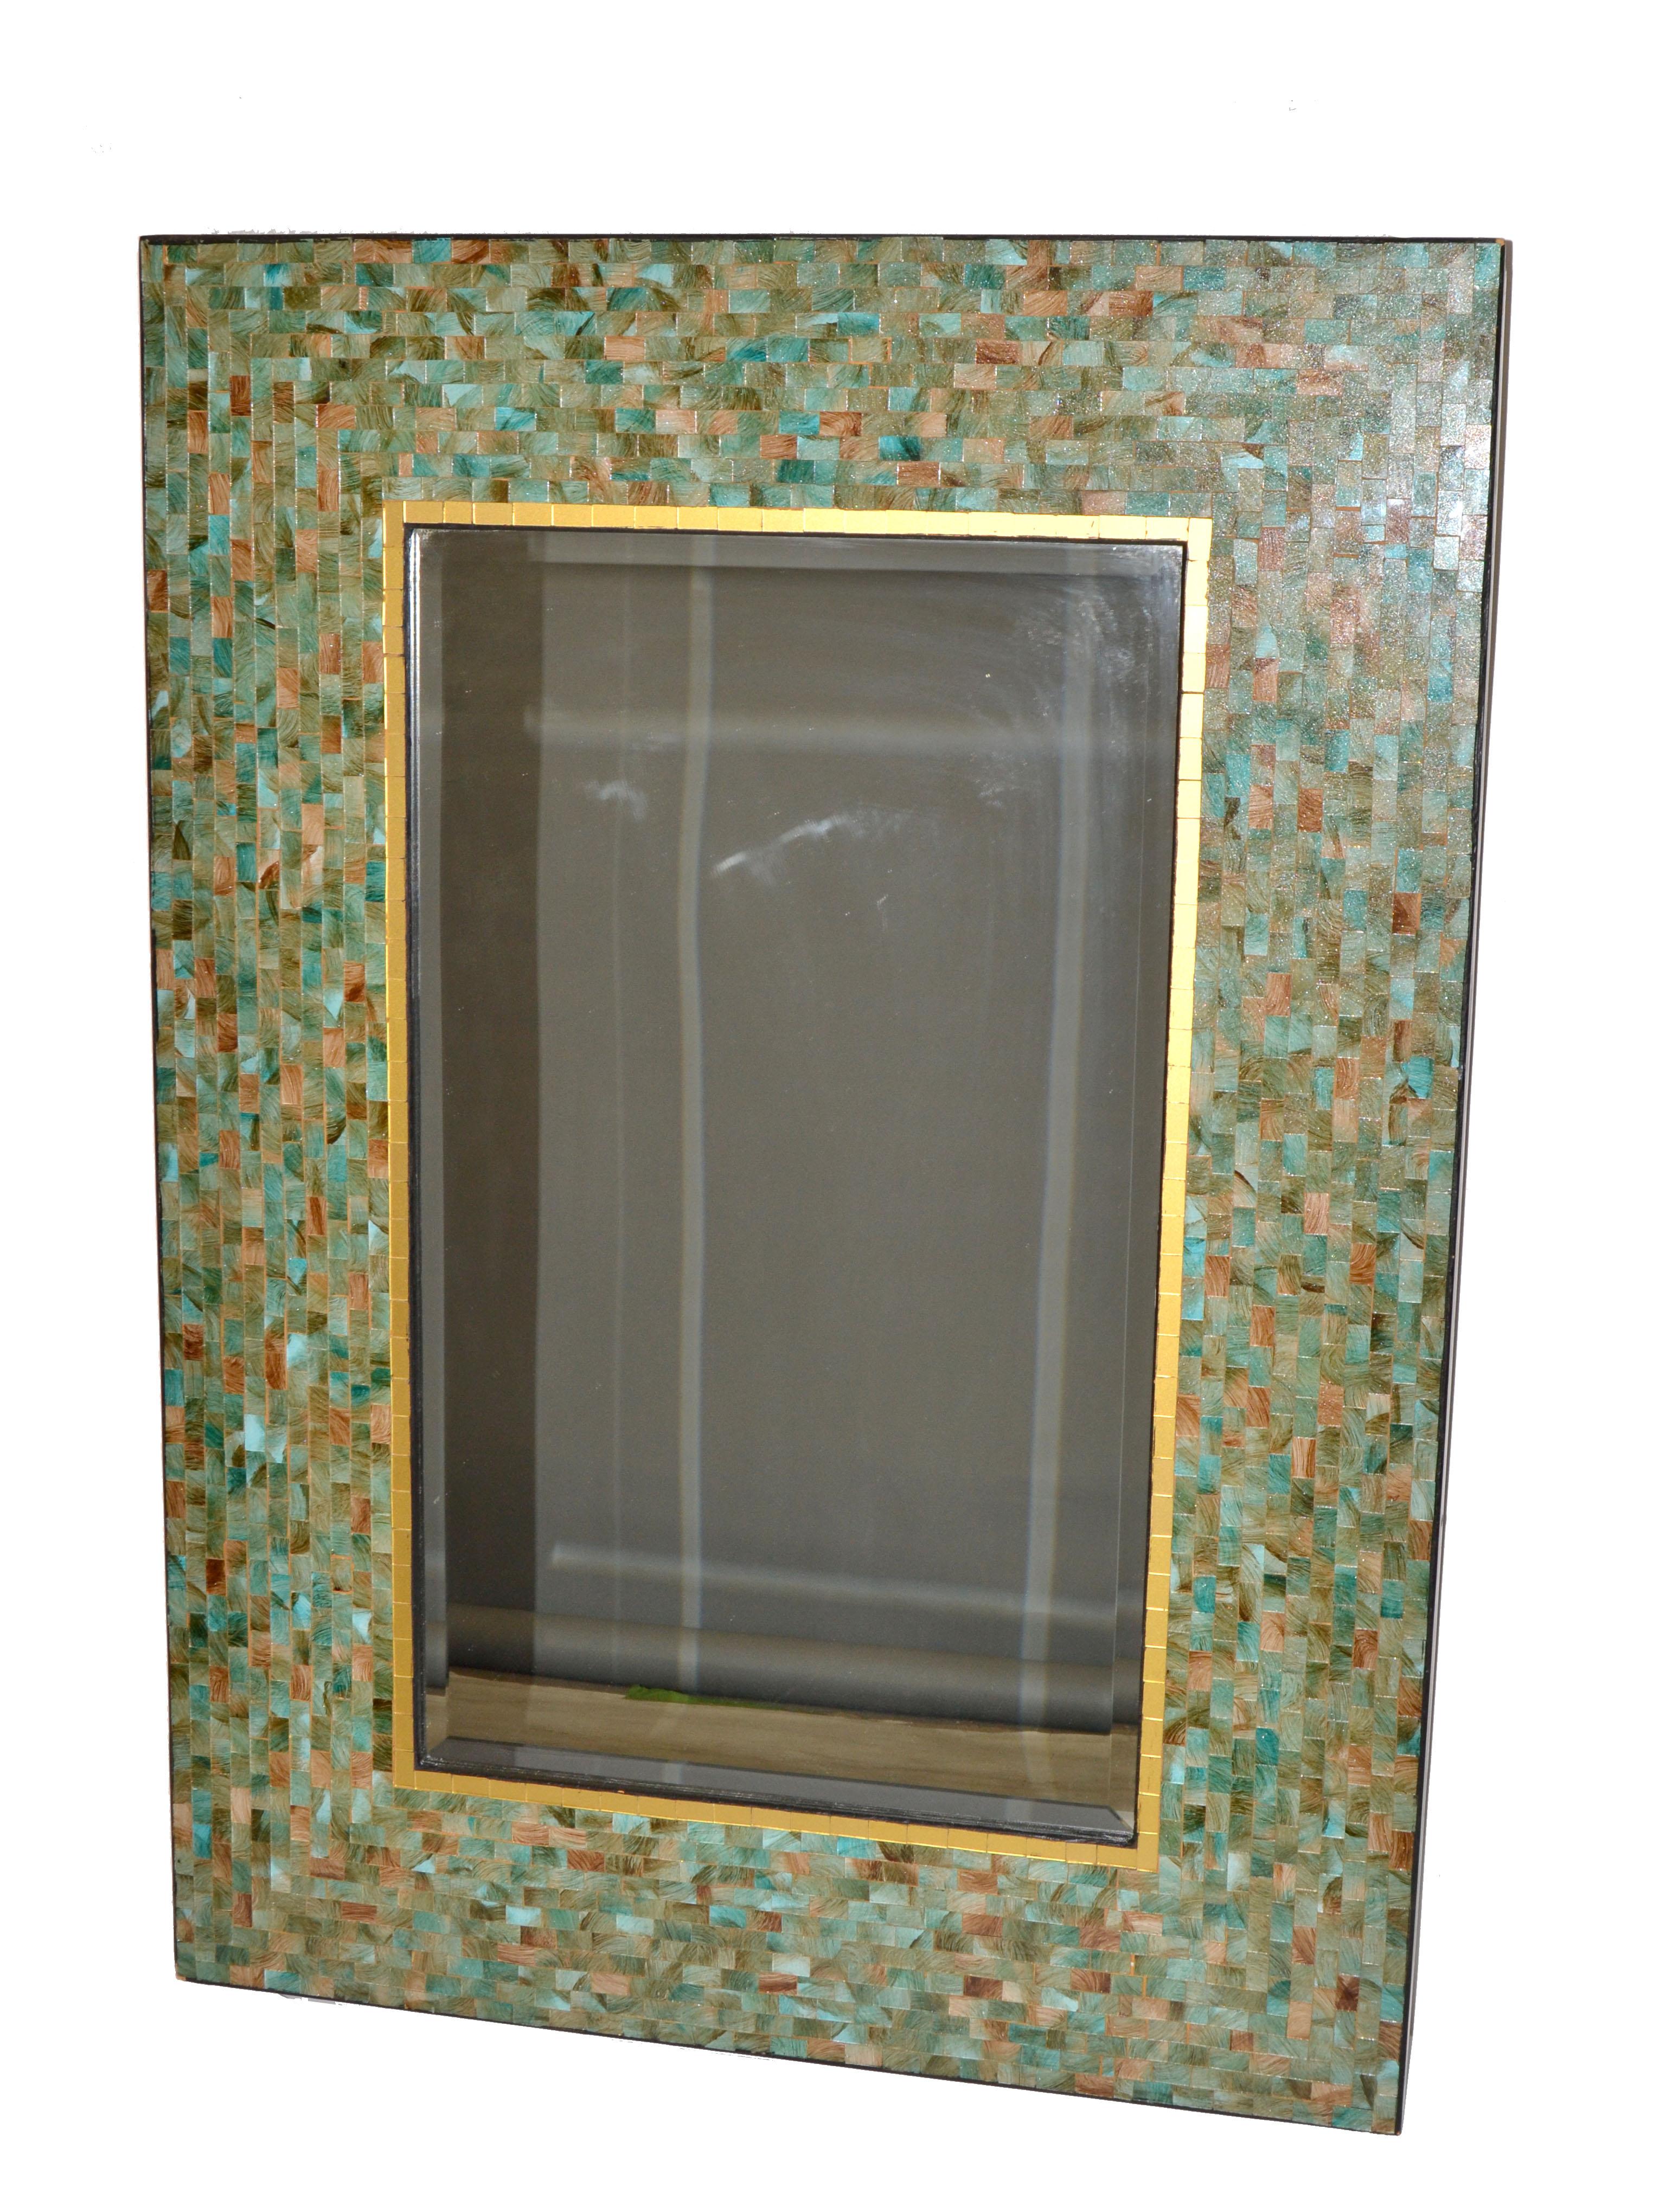 mosaic mirror pier one